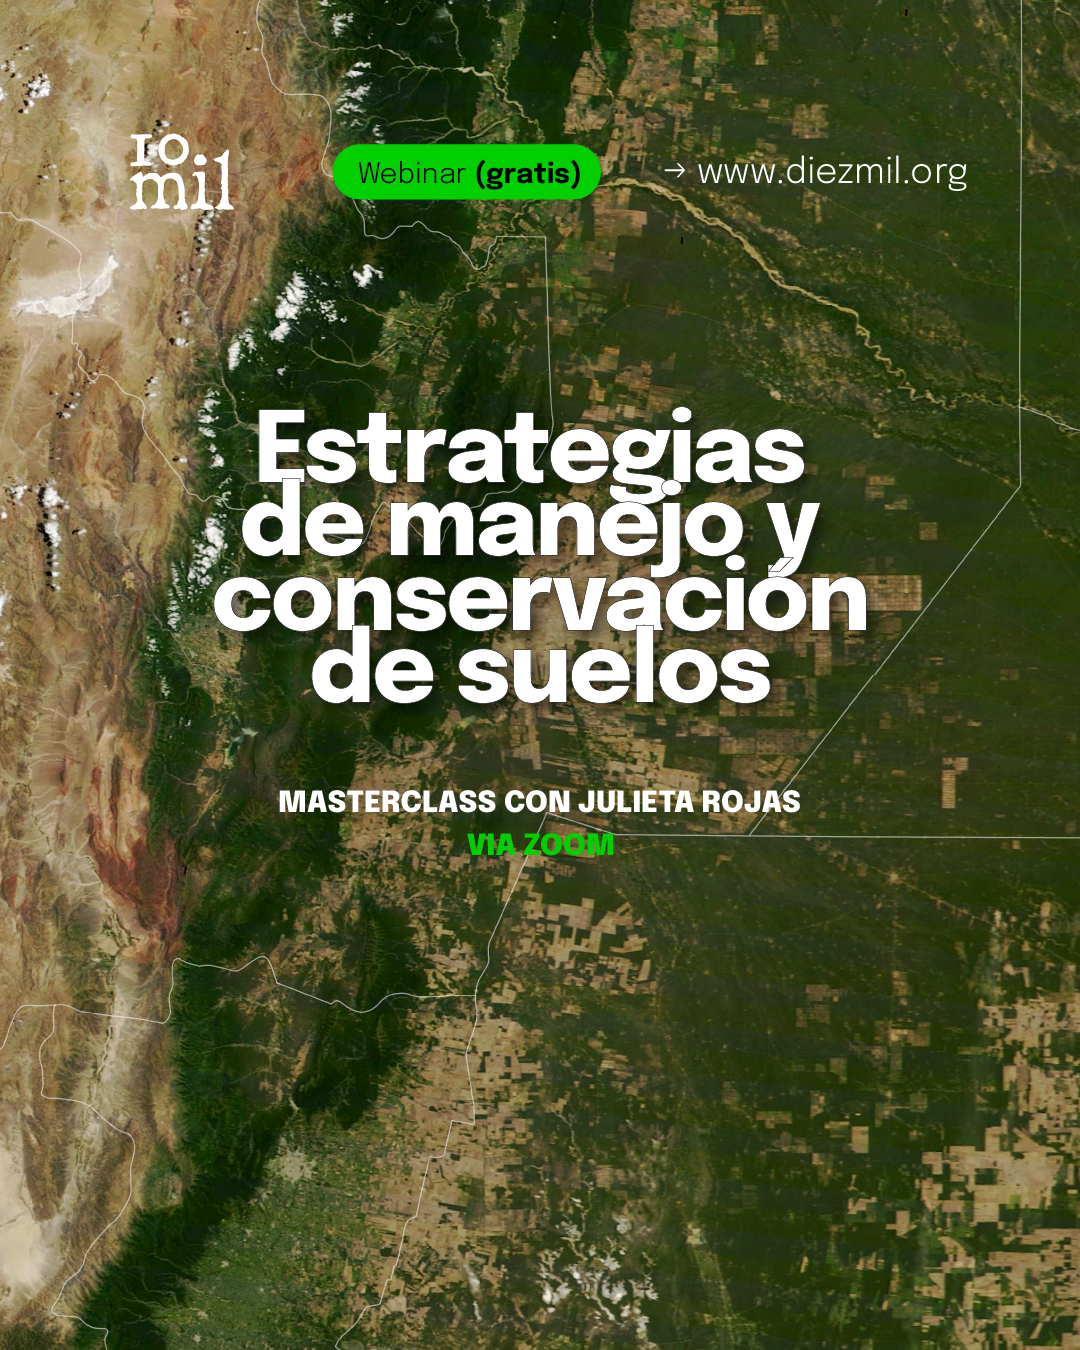 Masterclass: Estrategias de manejo y conservación de suelos.